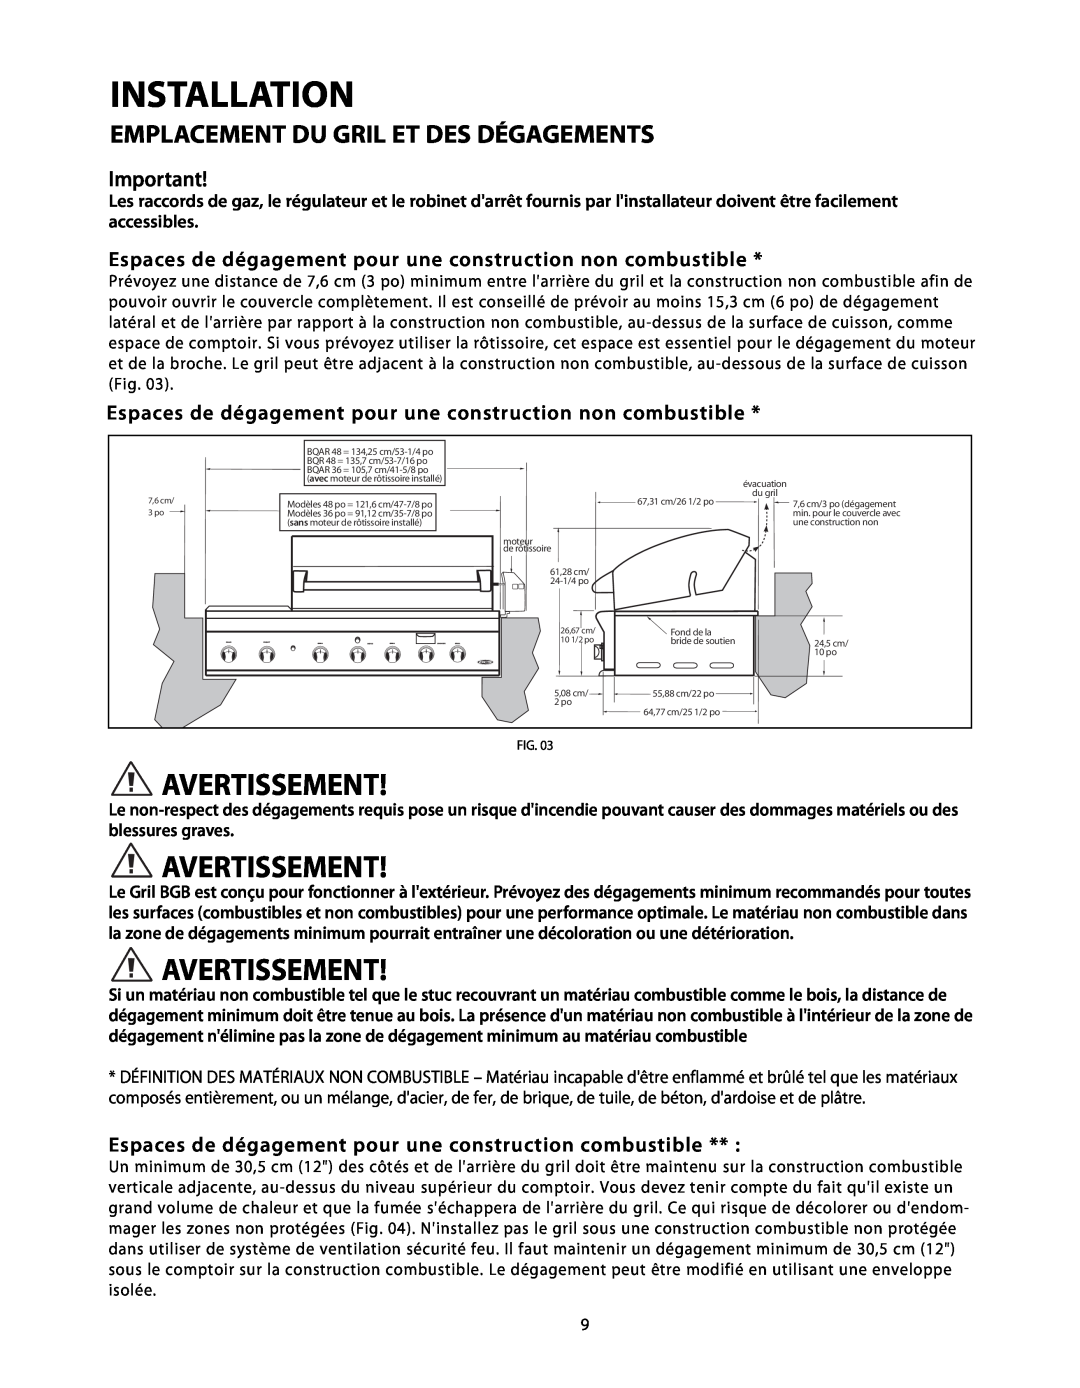 DCS BGB48-BQR, BGB48-BQAR manual Espaces de dégagement pour une construction non combustible, Installation, Avertissement 